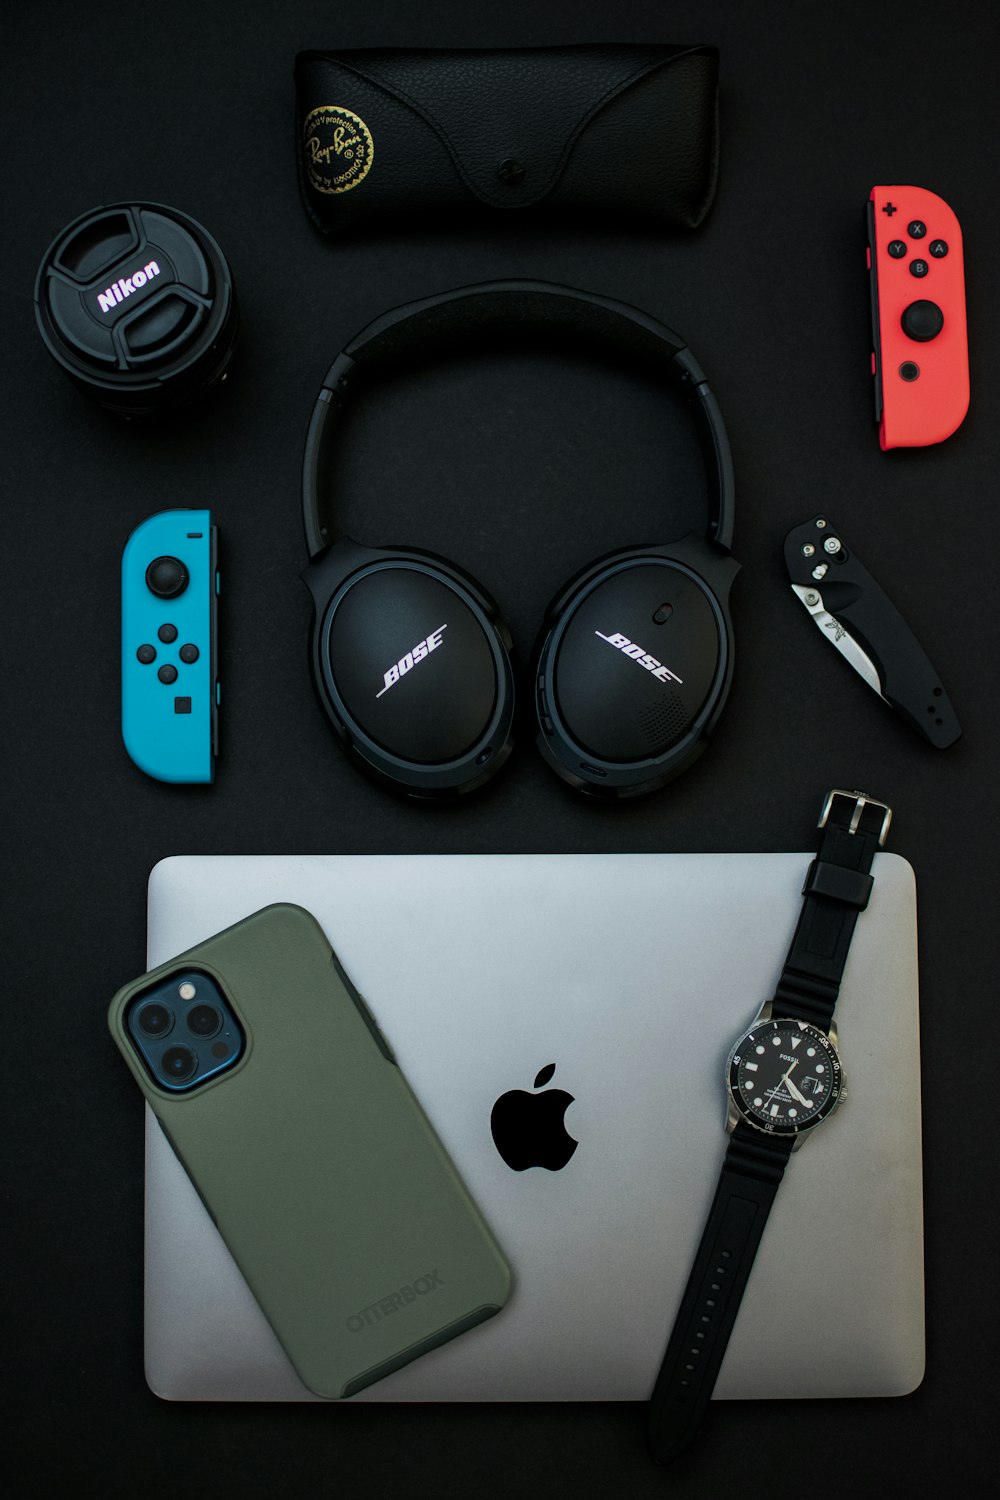 Schwarze Sony-Kopfhörer neben silbernem iPhone 6 und schwarz-silberner Uhr